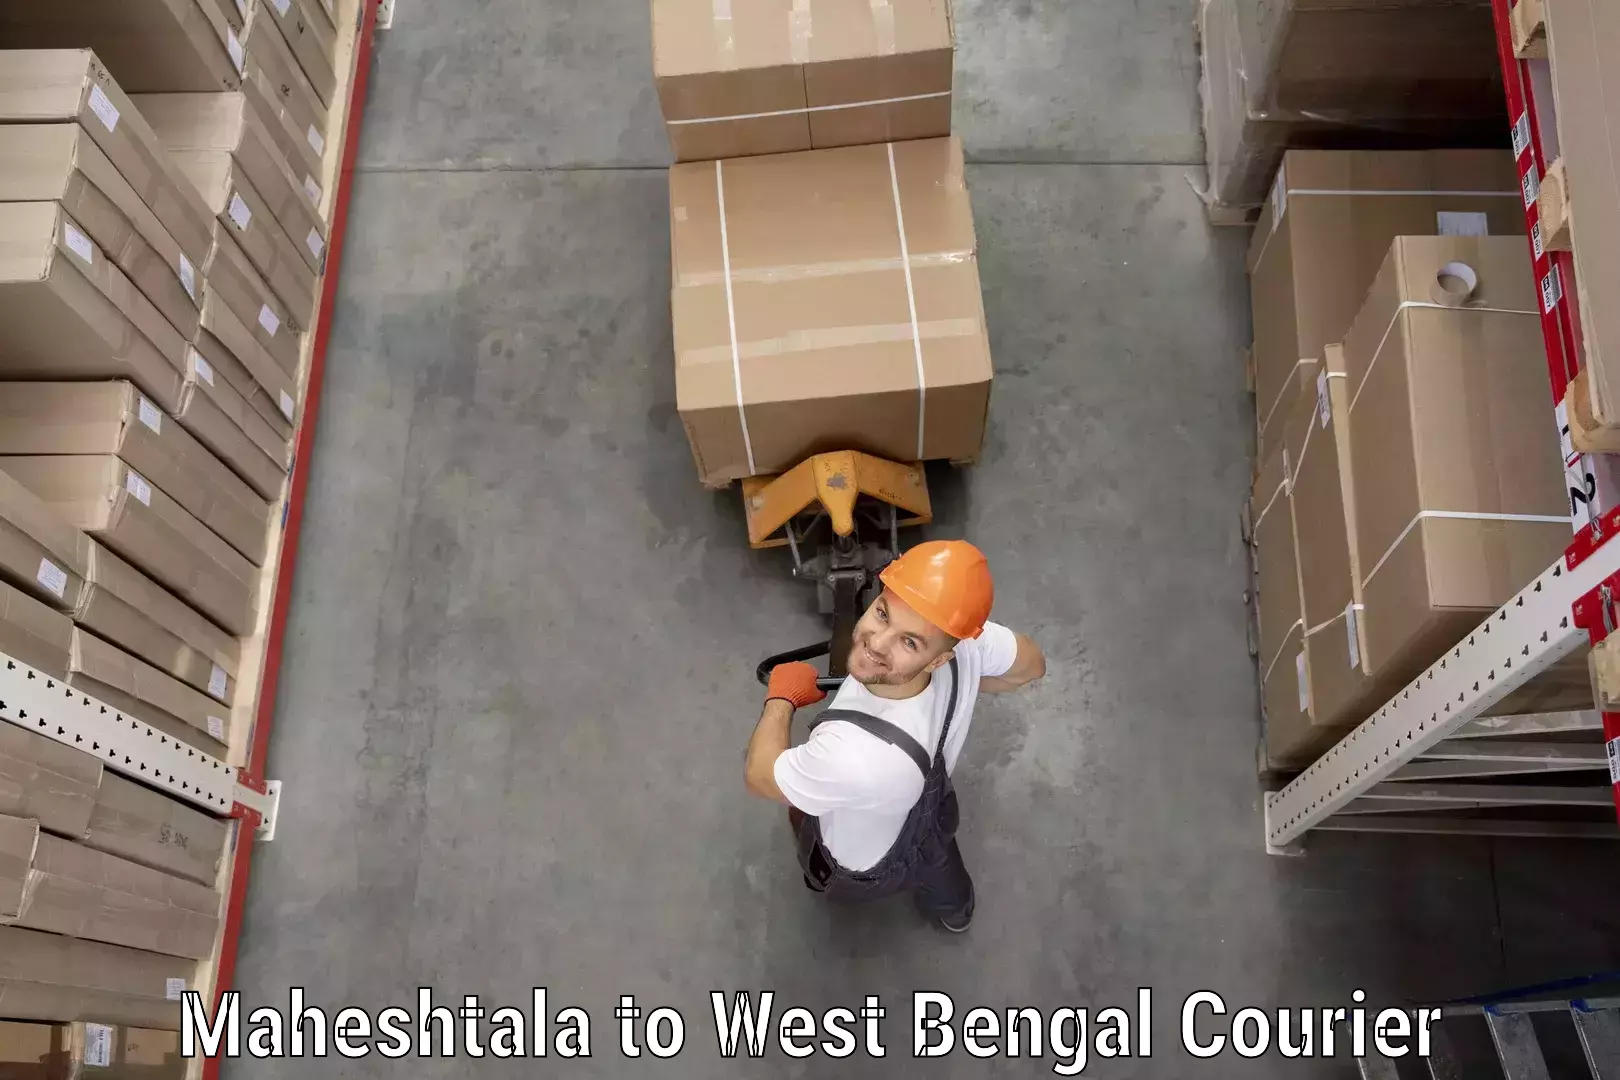 Global shipping networks Maheshtala to Hooghly